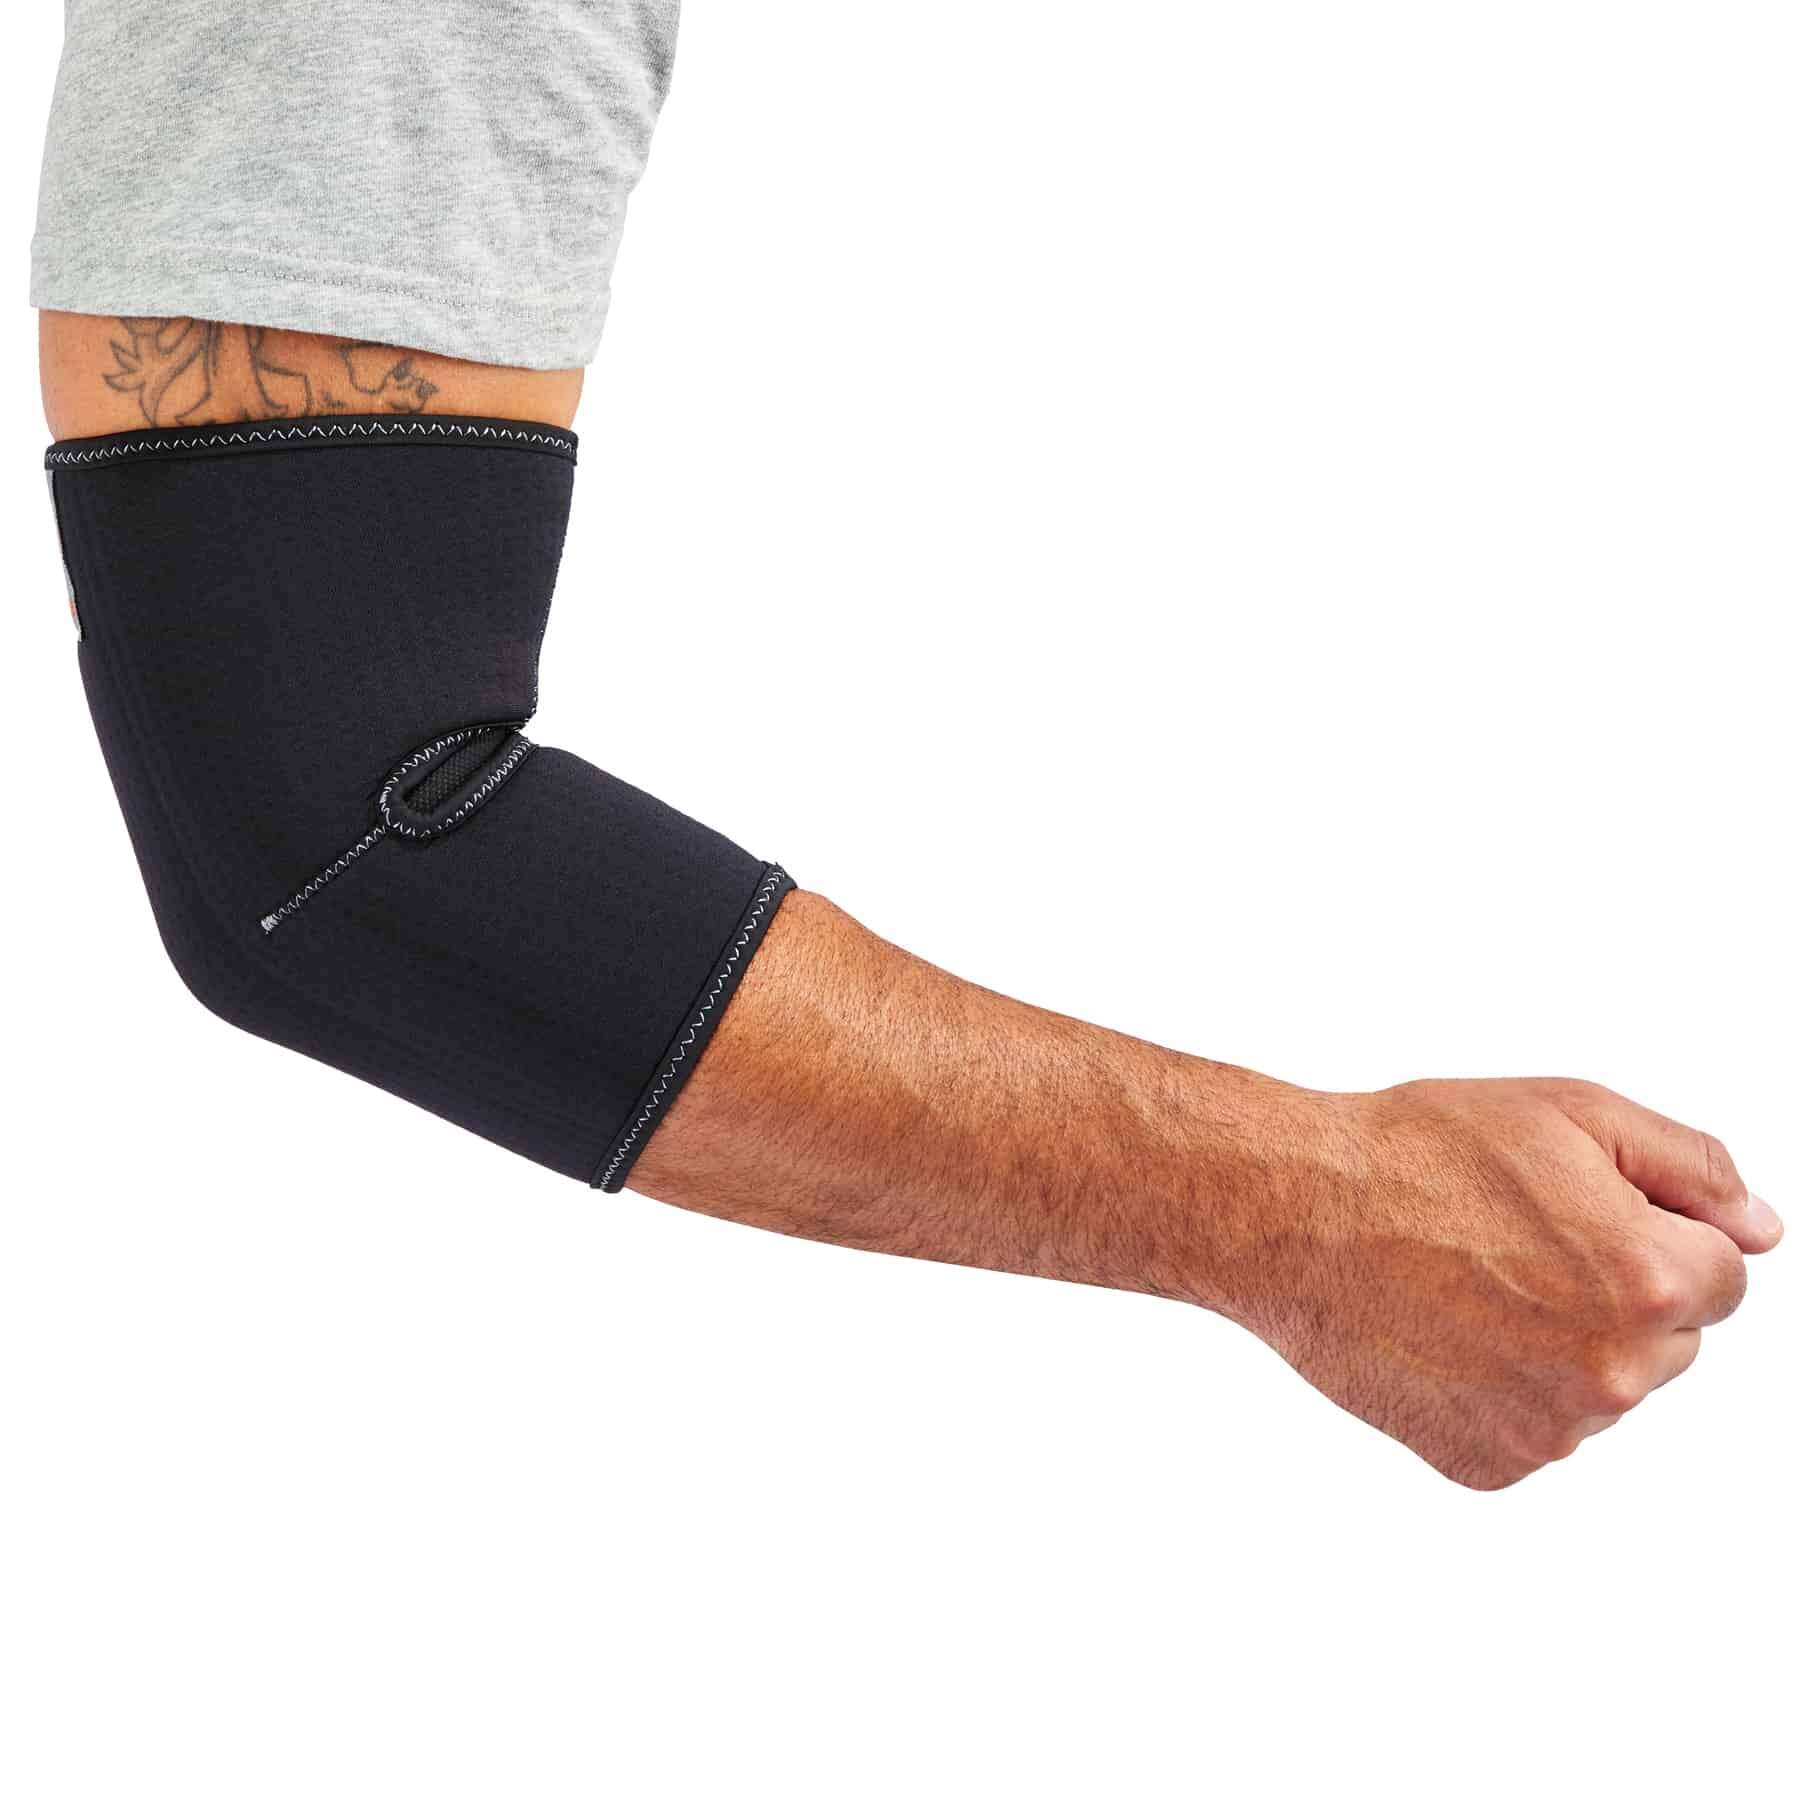 OrthoFit Adjustable Compression Elbow Sleeve